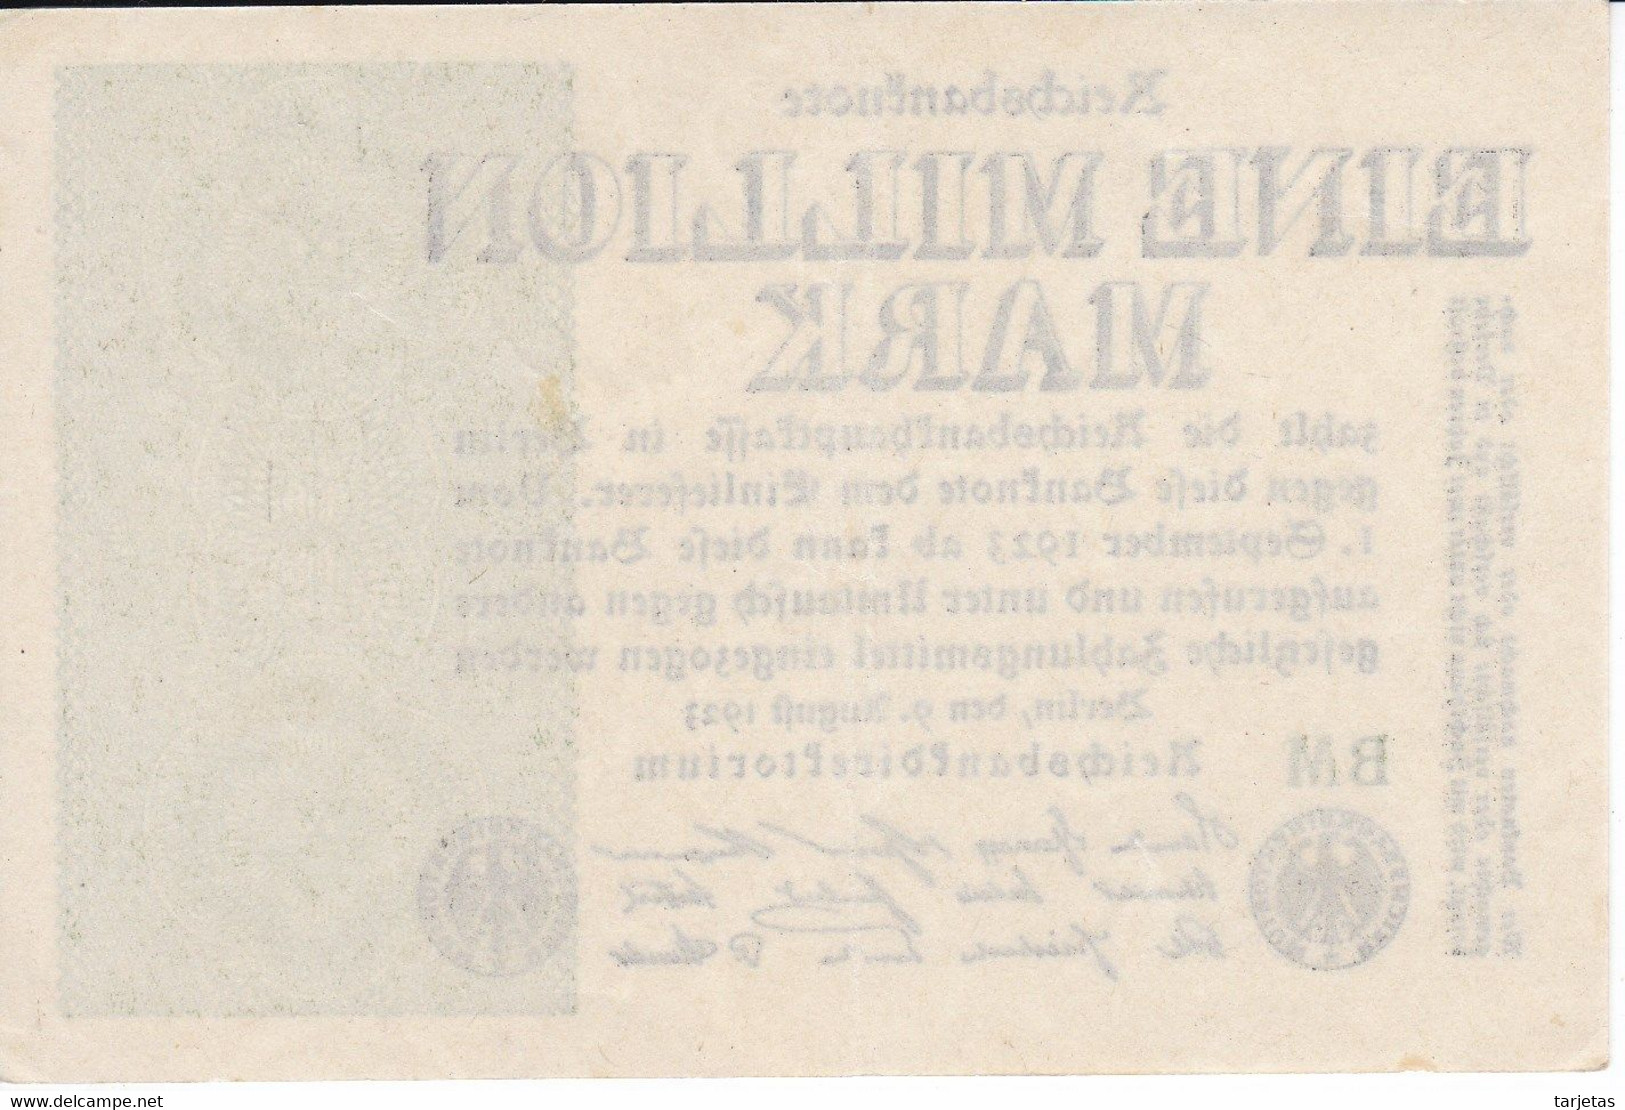 BILLETE DE ALEMANIA DE EINE MILLION MARK DEL AÑO 1923 CALIDAD EBC (XF) (BANKNOTE) - 1 Mio. Mark